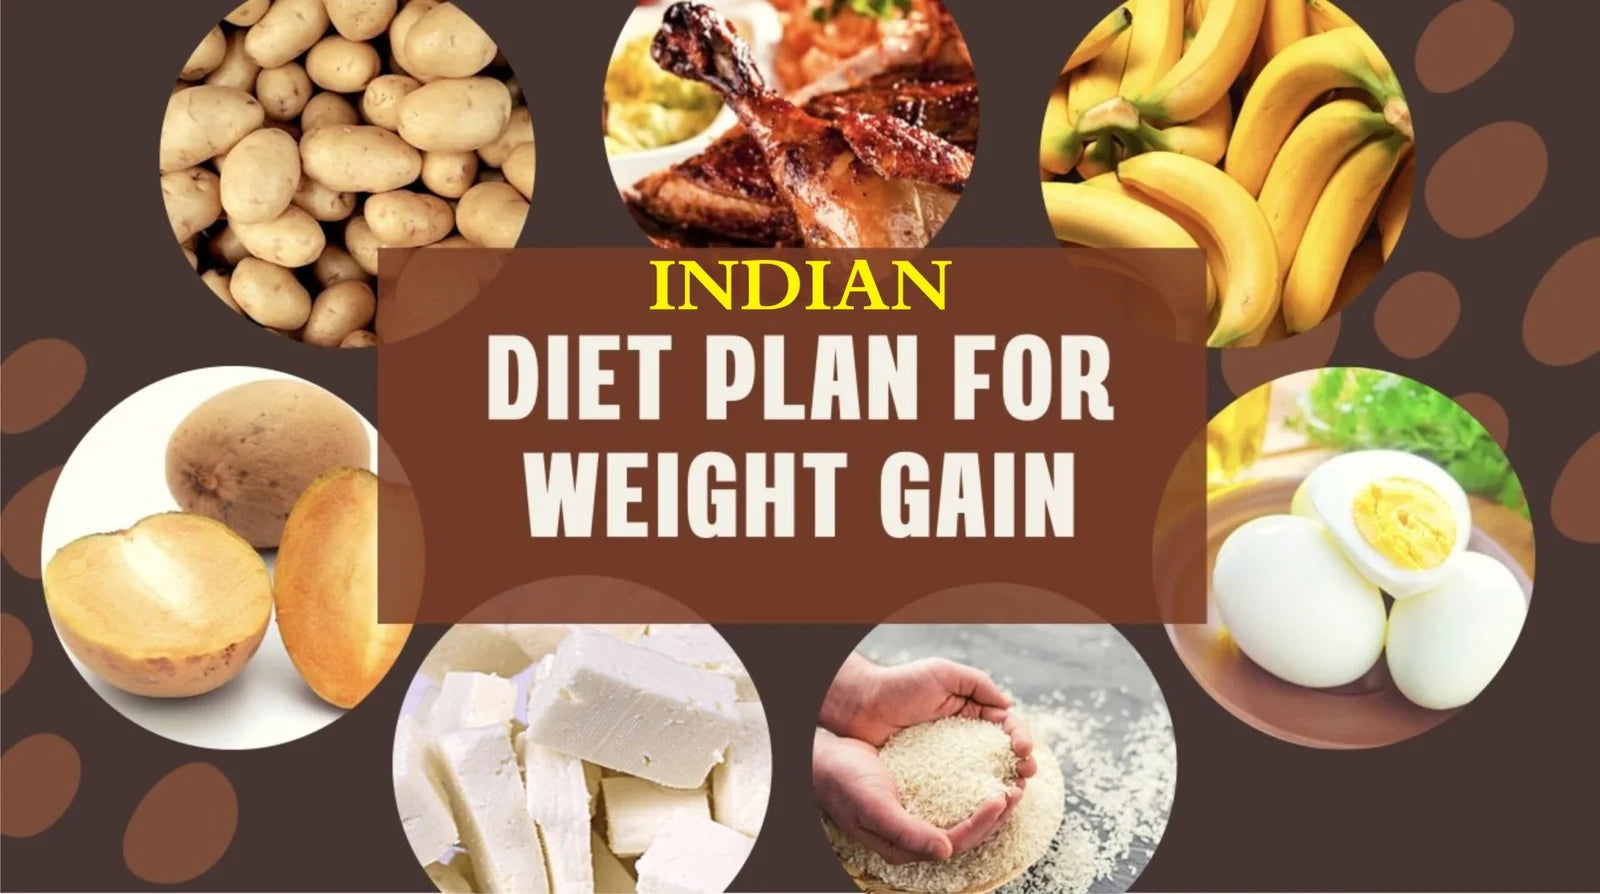 Diet plan to gain weight